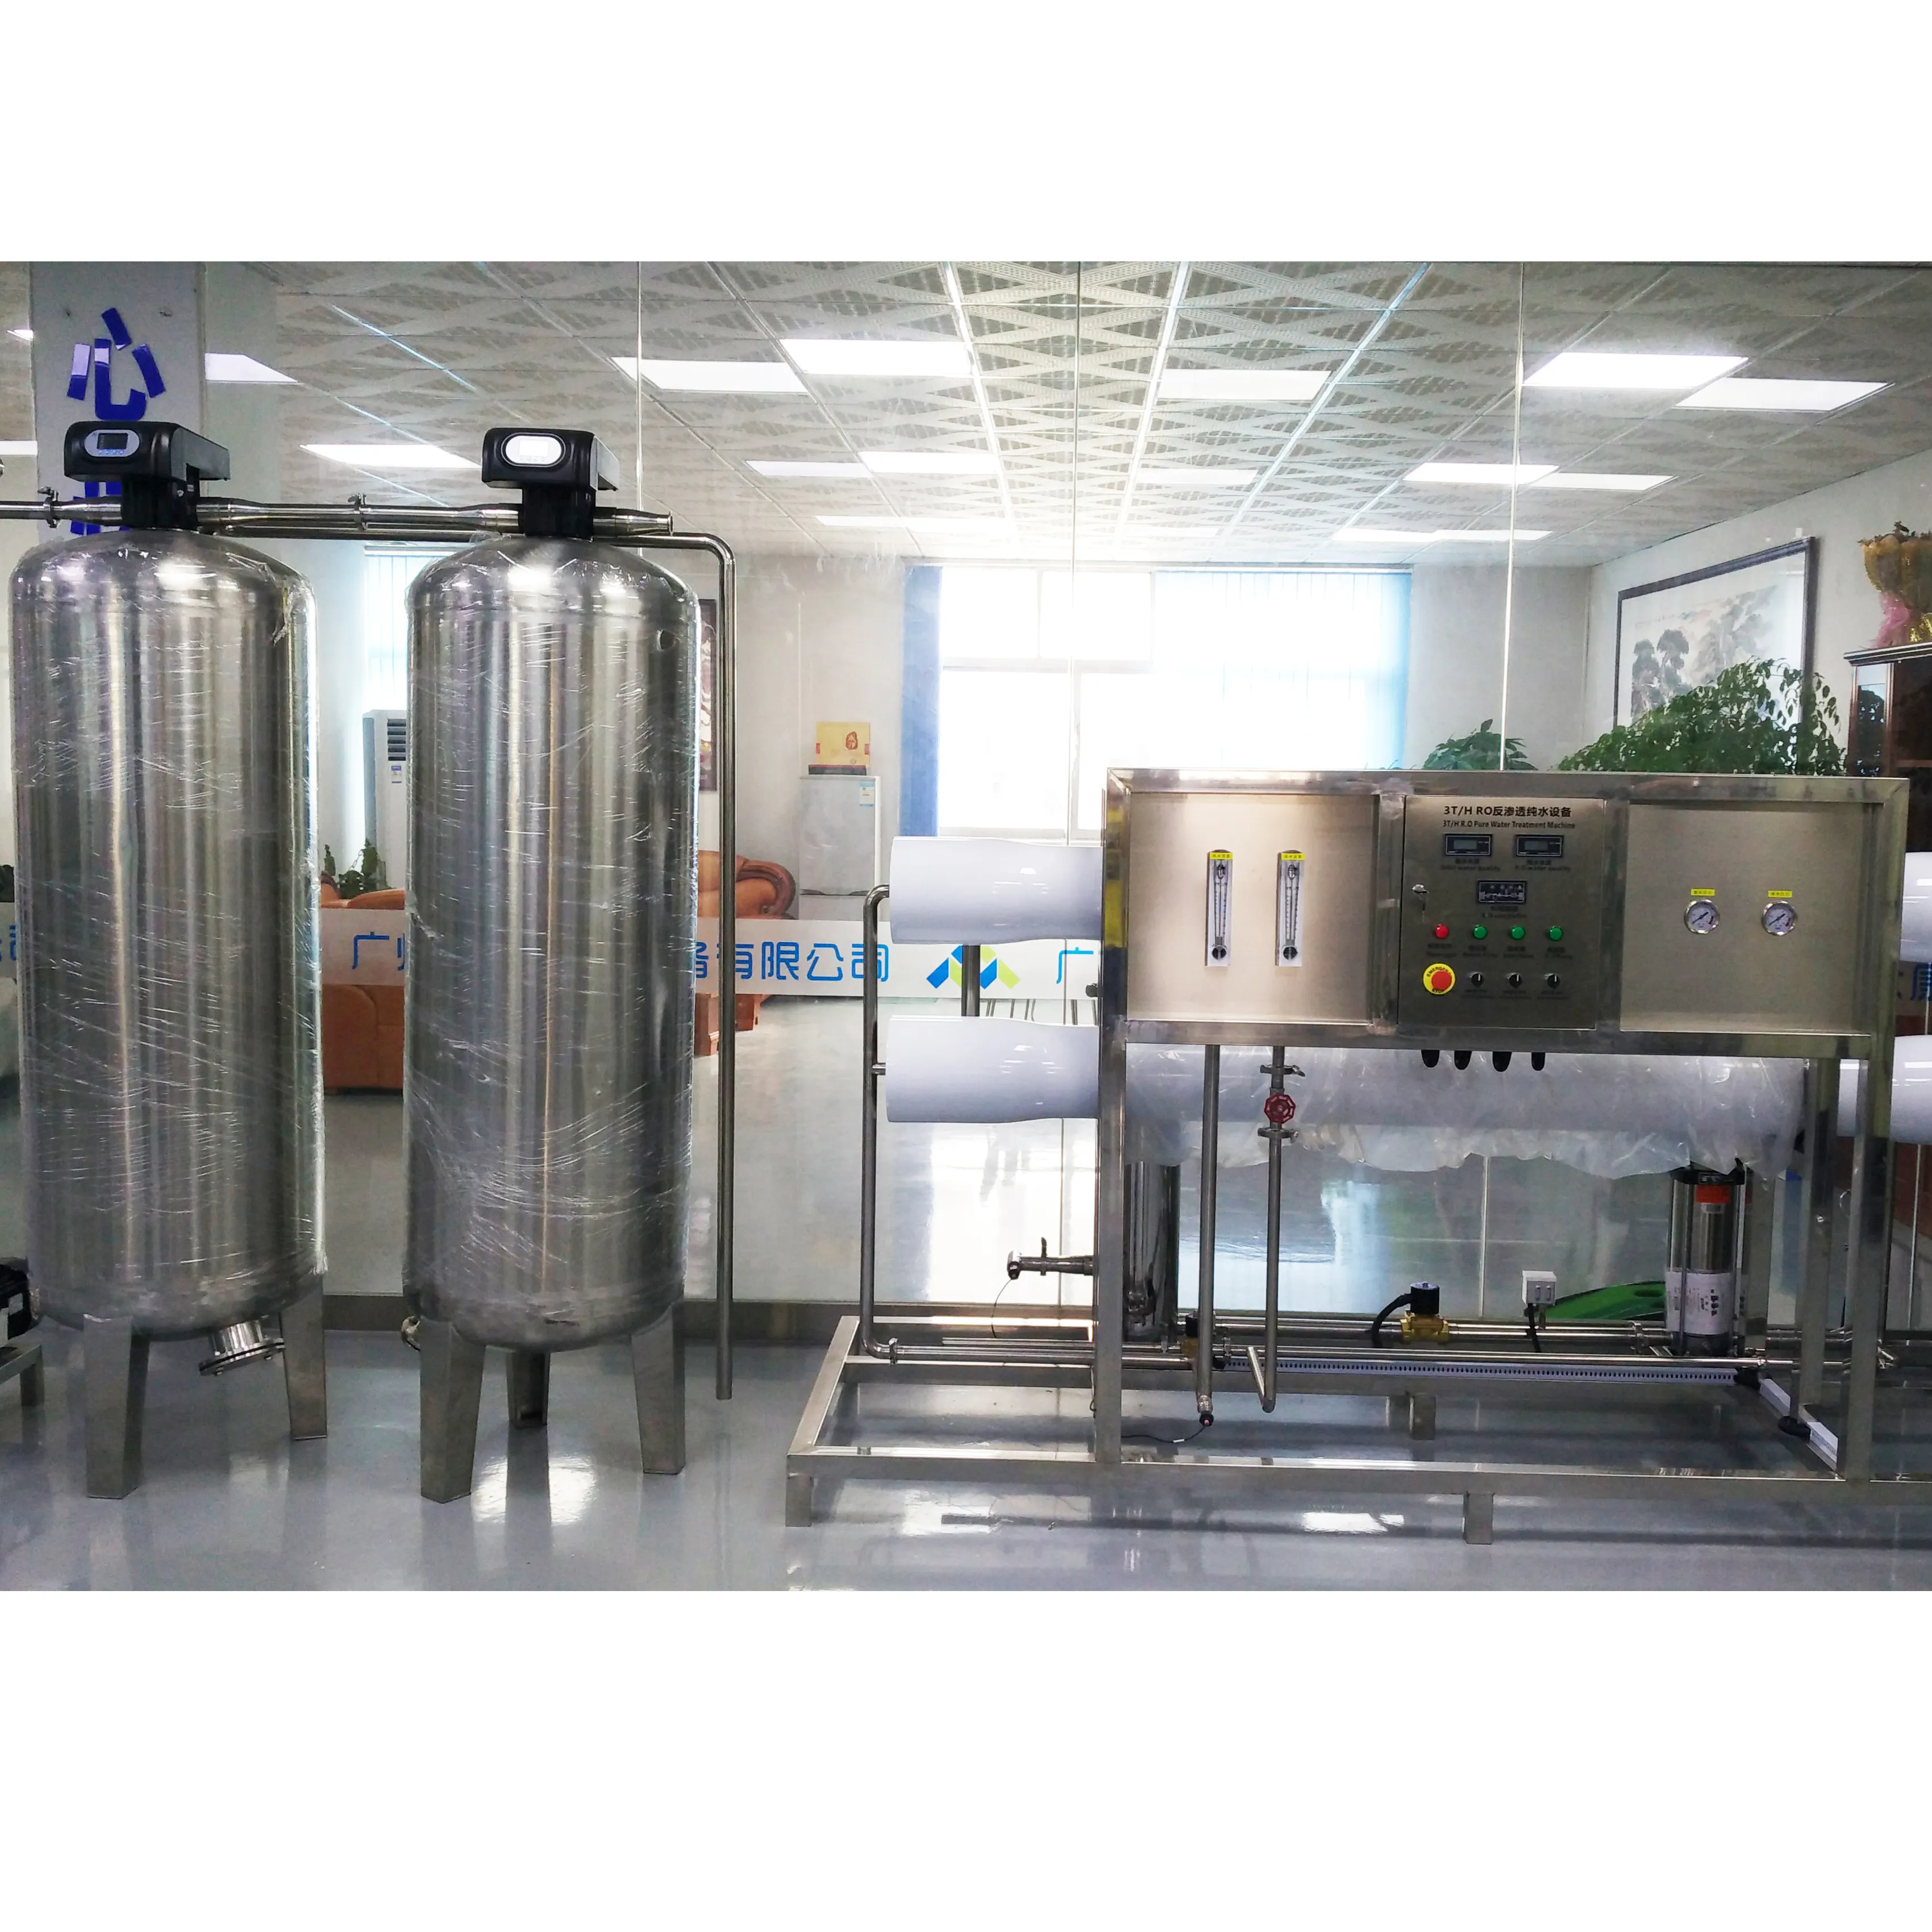 membranpumpe wasseraufbereitung maschine wasseraufbereitung automatischer selbstreinigender filter ro uv ro membranblech umkehrosmose